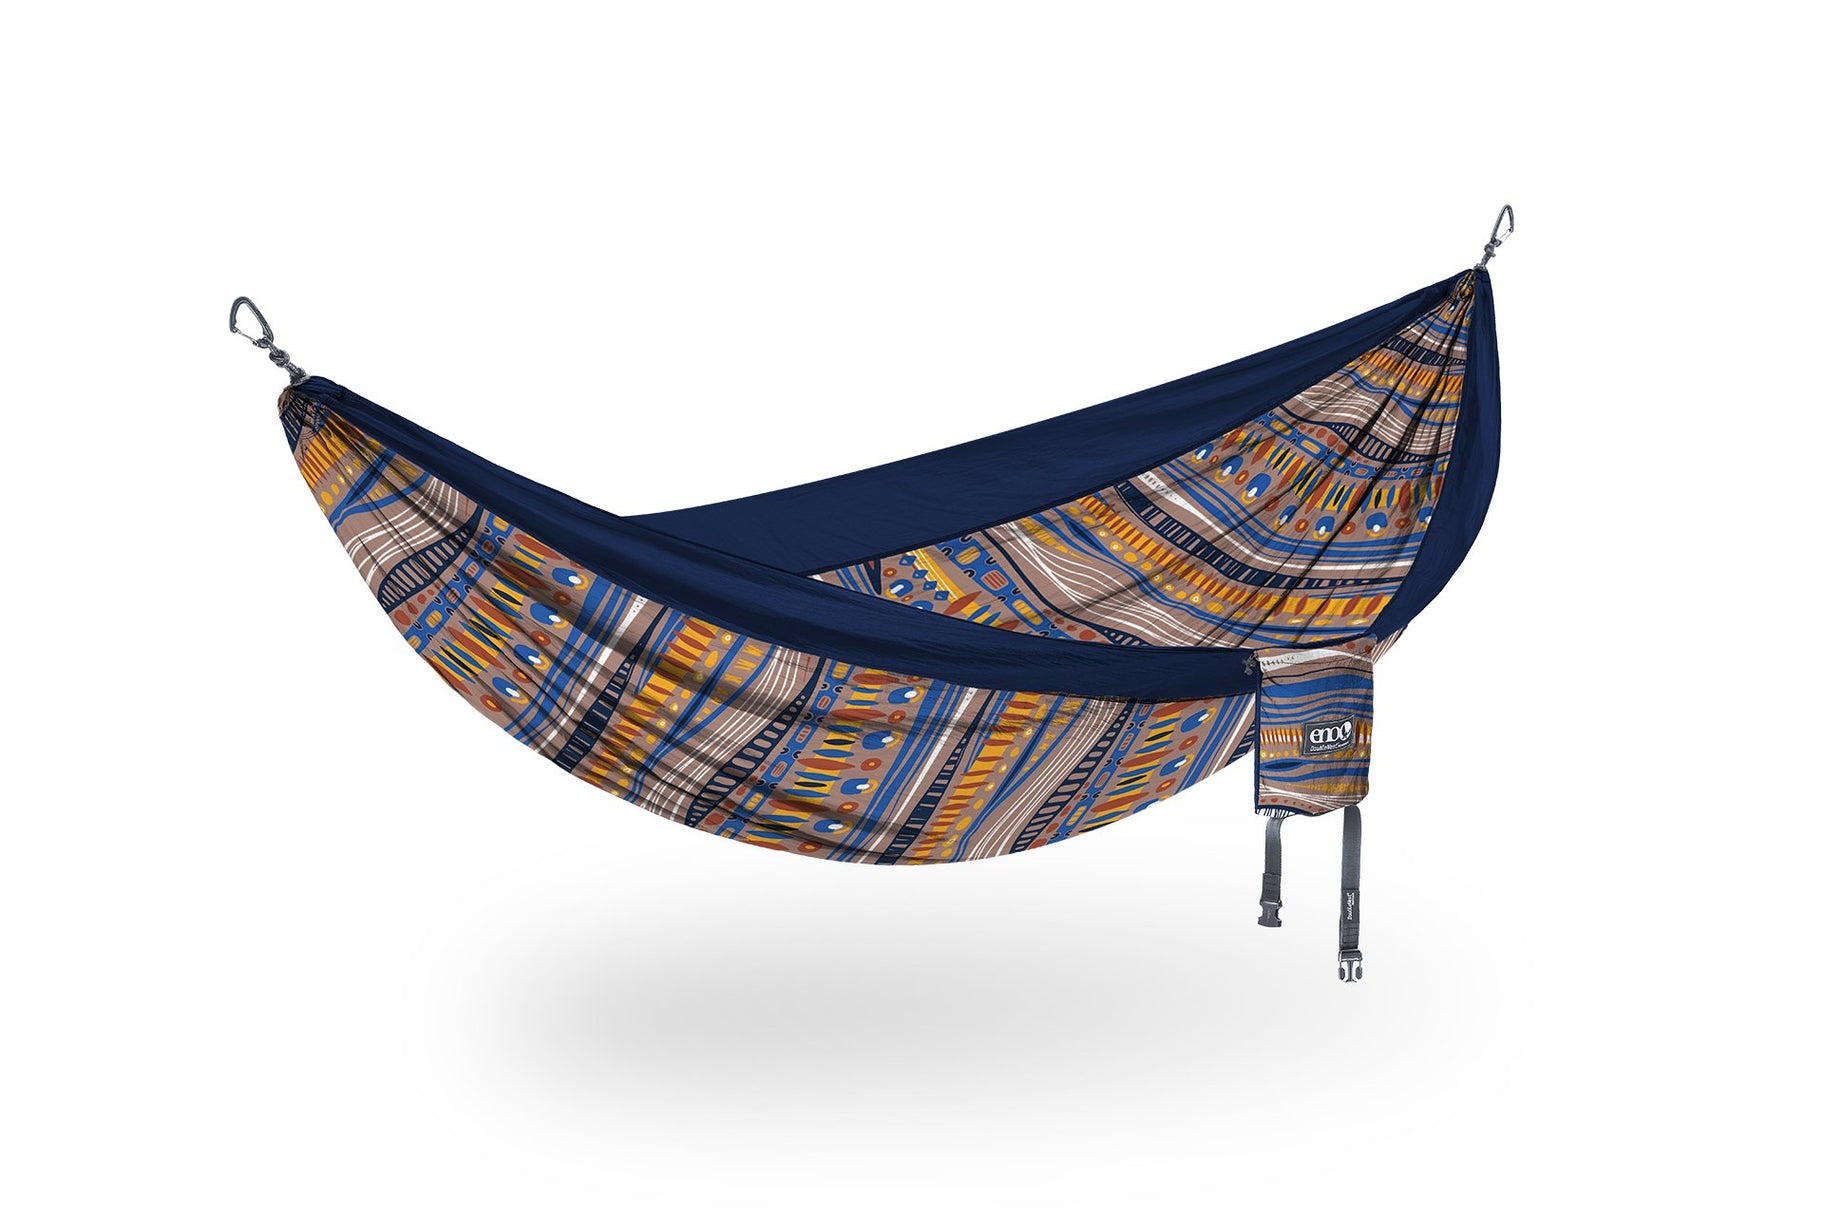 ENO DoubleNest Print hammock in Tundra/Navy